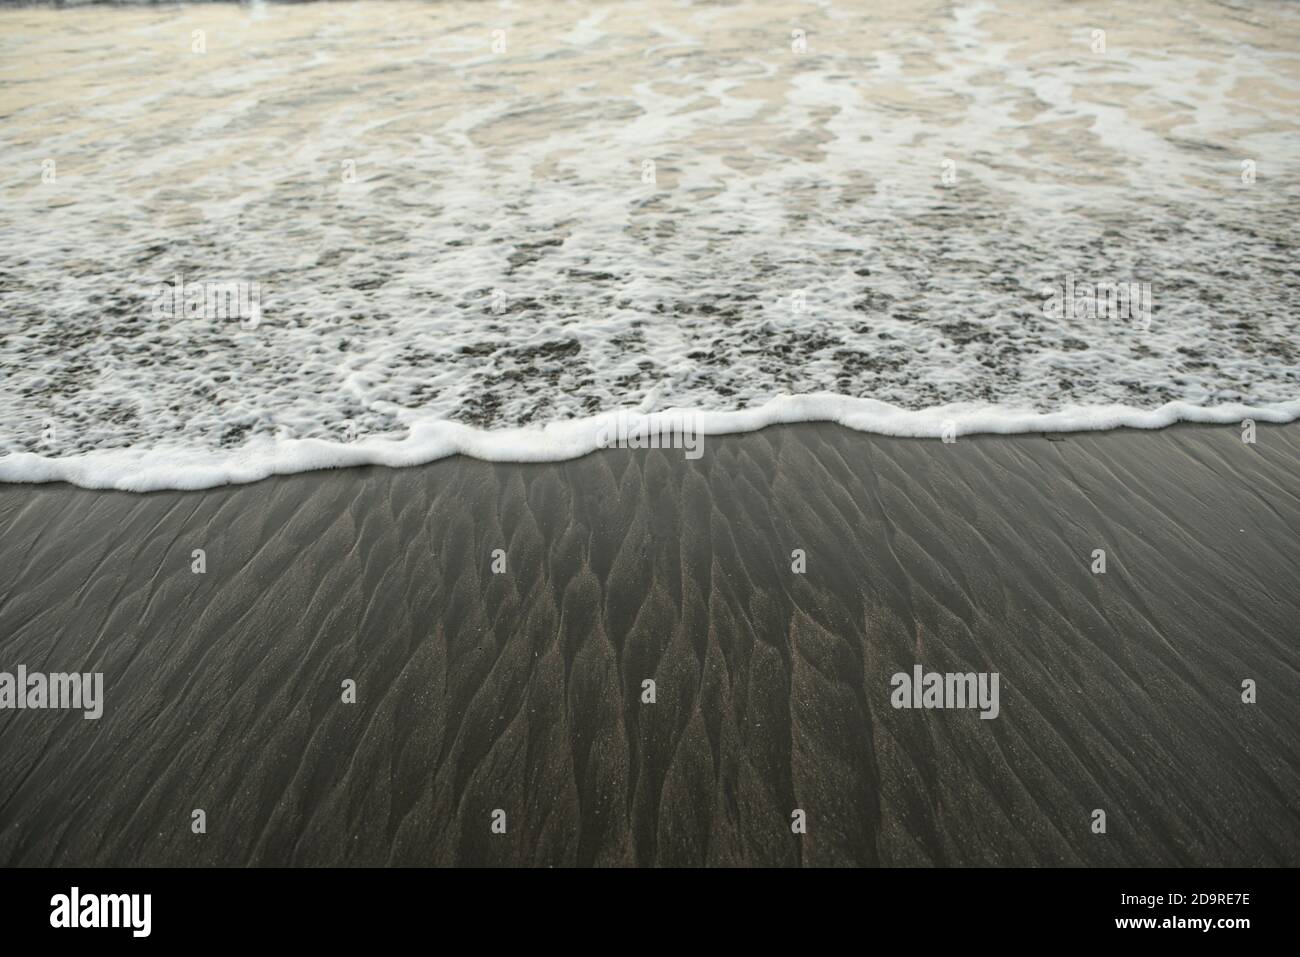 Gros plan de la vague océanique mousseuse qui atteint le rivage. Belle texture ondulée / motif sur sable noir. Santa Catalina, Panama, Amérique centrale Banque D'Images